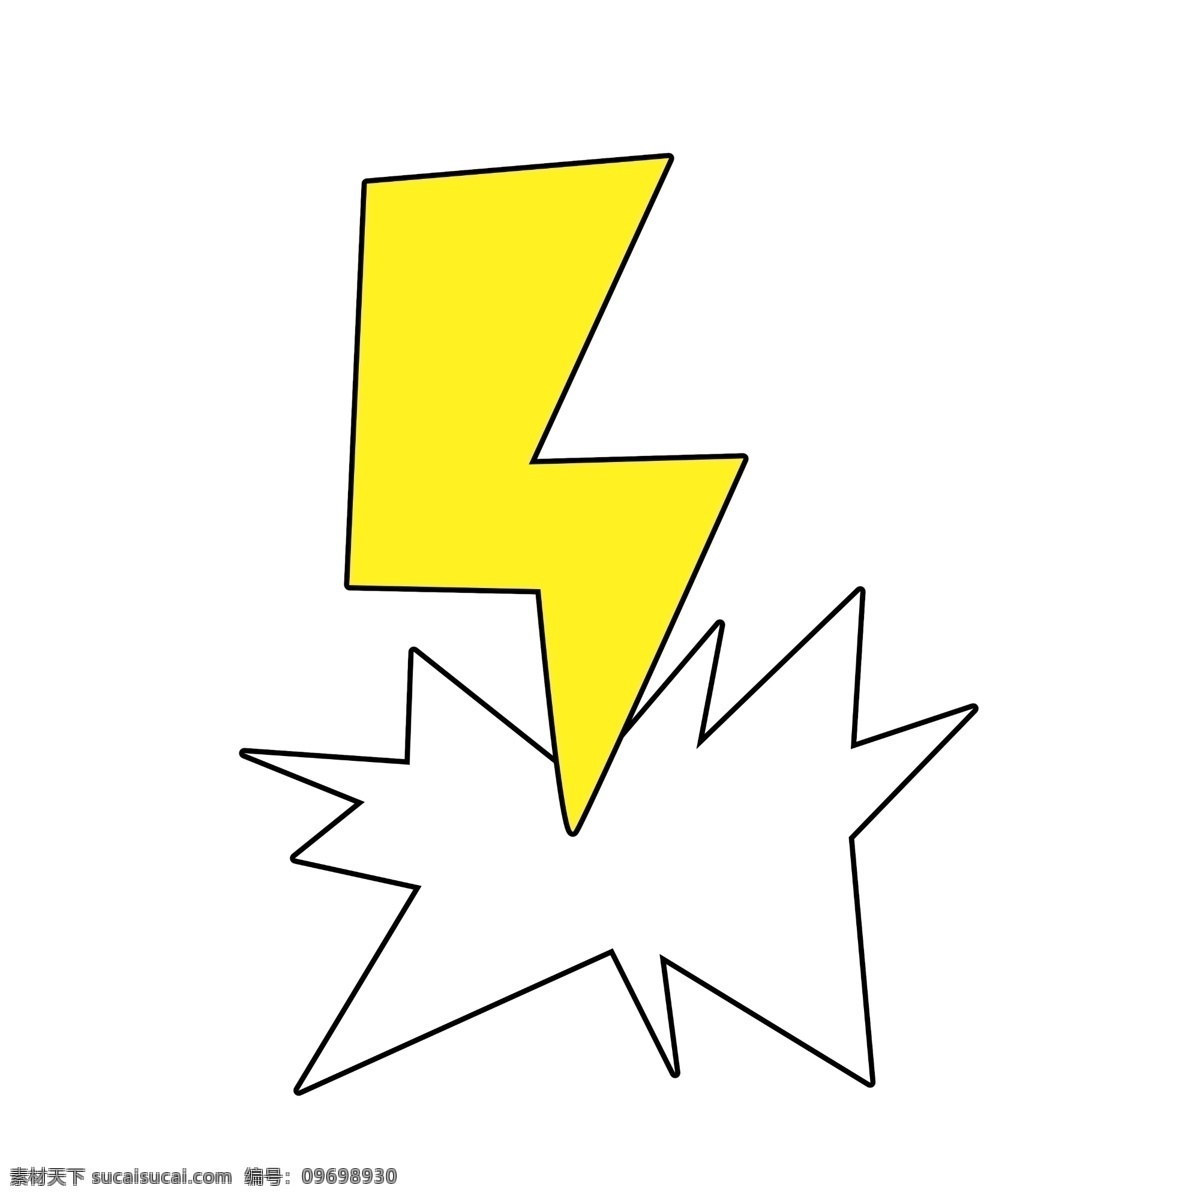 闪电 图案 元素 免 扣 闪电效果 海报设计图标 闪电图案 装饰图案 黄色闪电